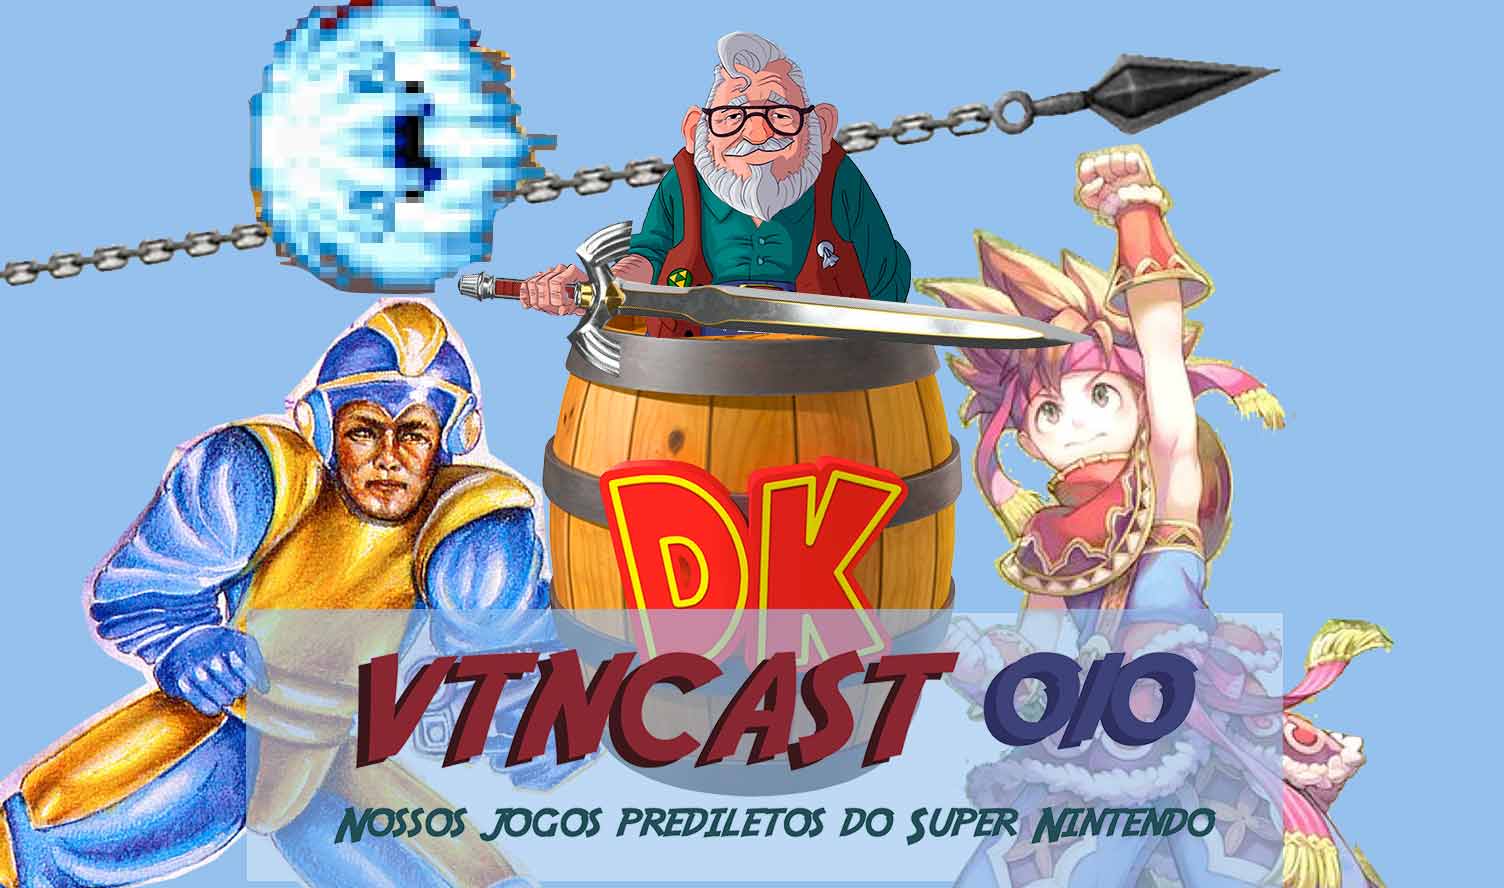 VTNCast 010 – Nossos jogos prediletos do Super Nintendo (SNES) post thumbnail image